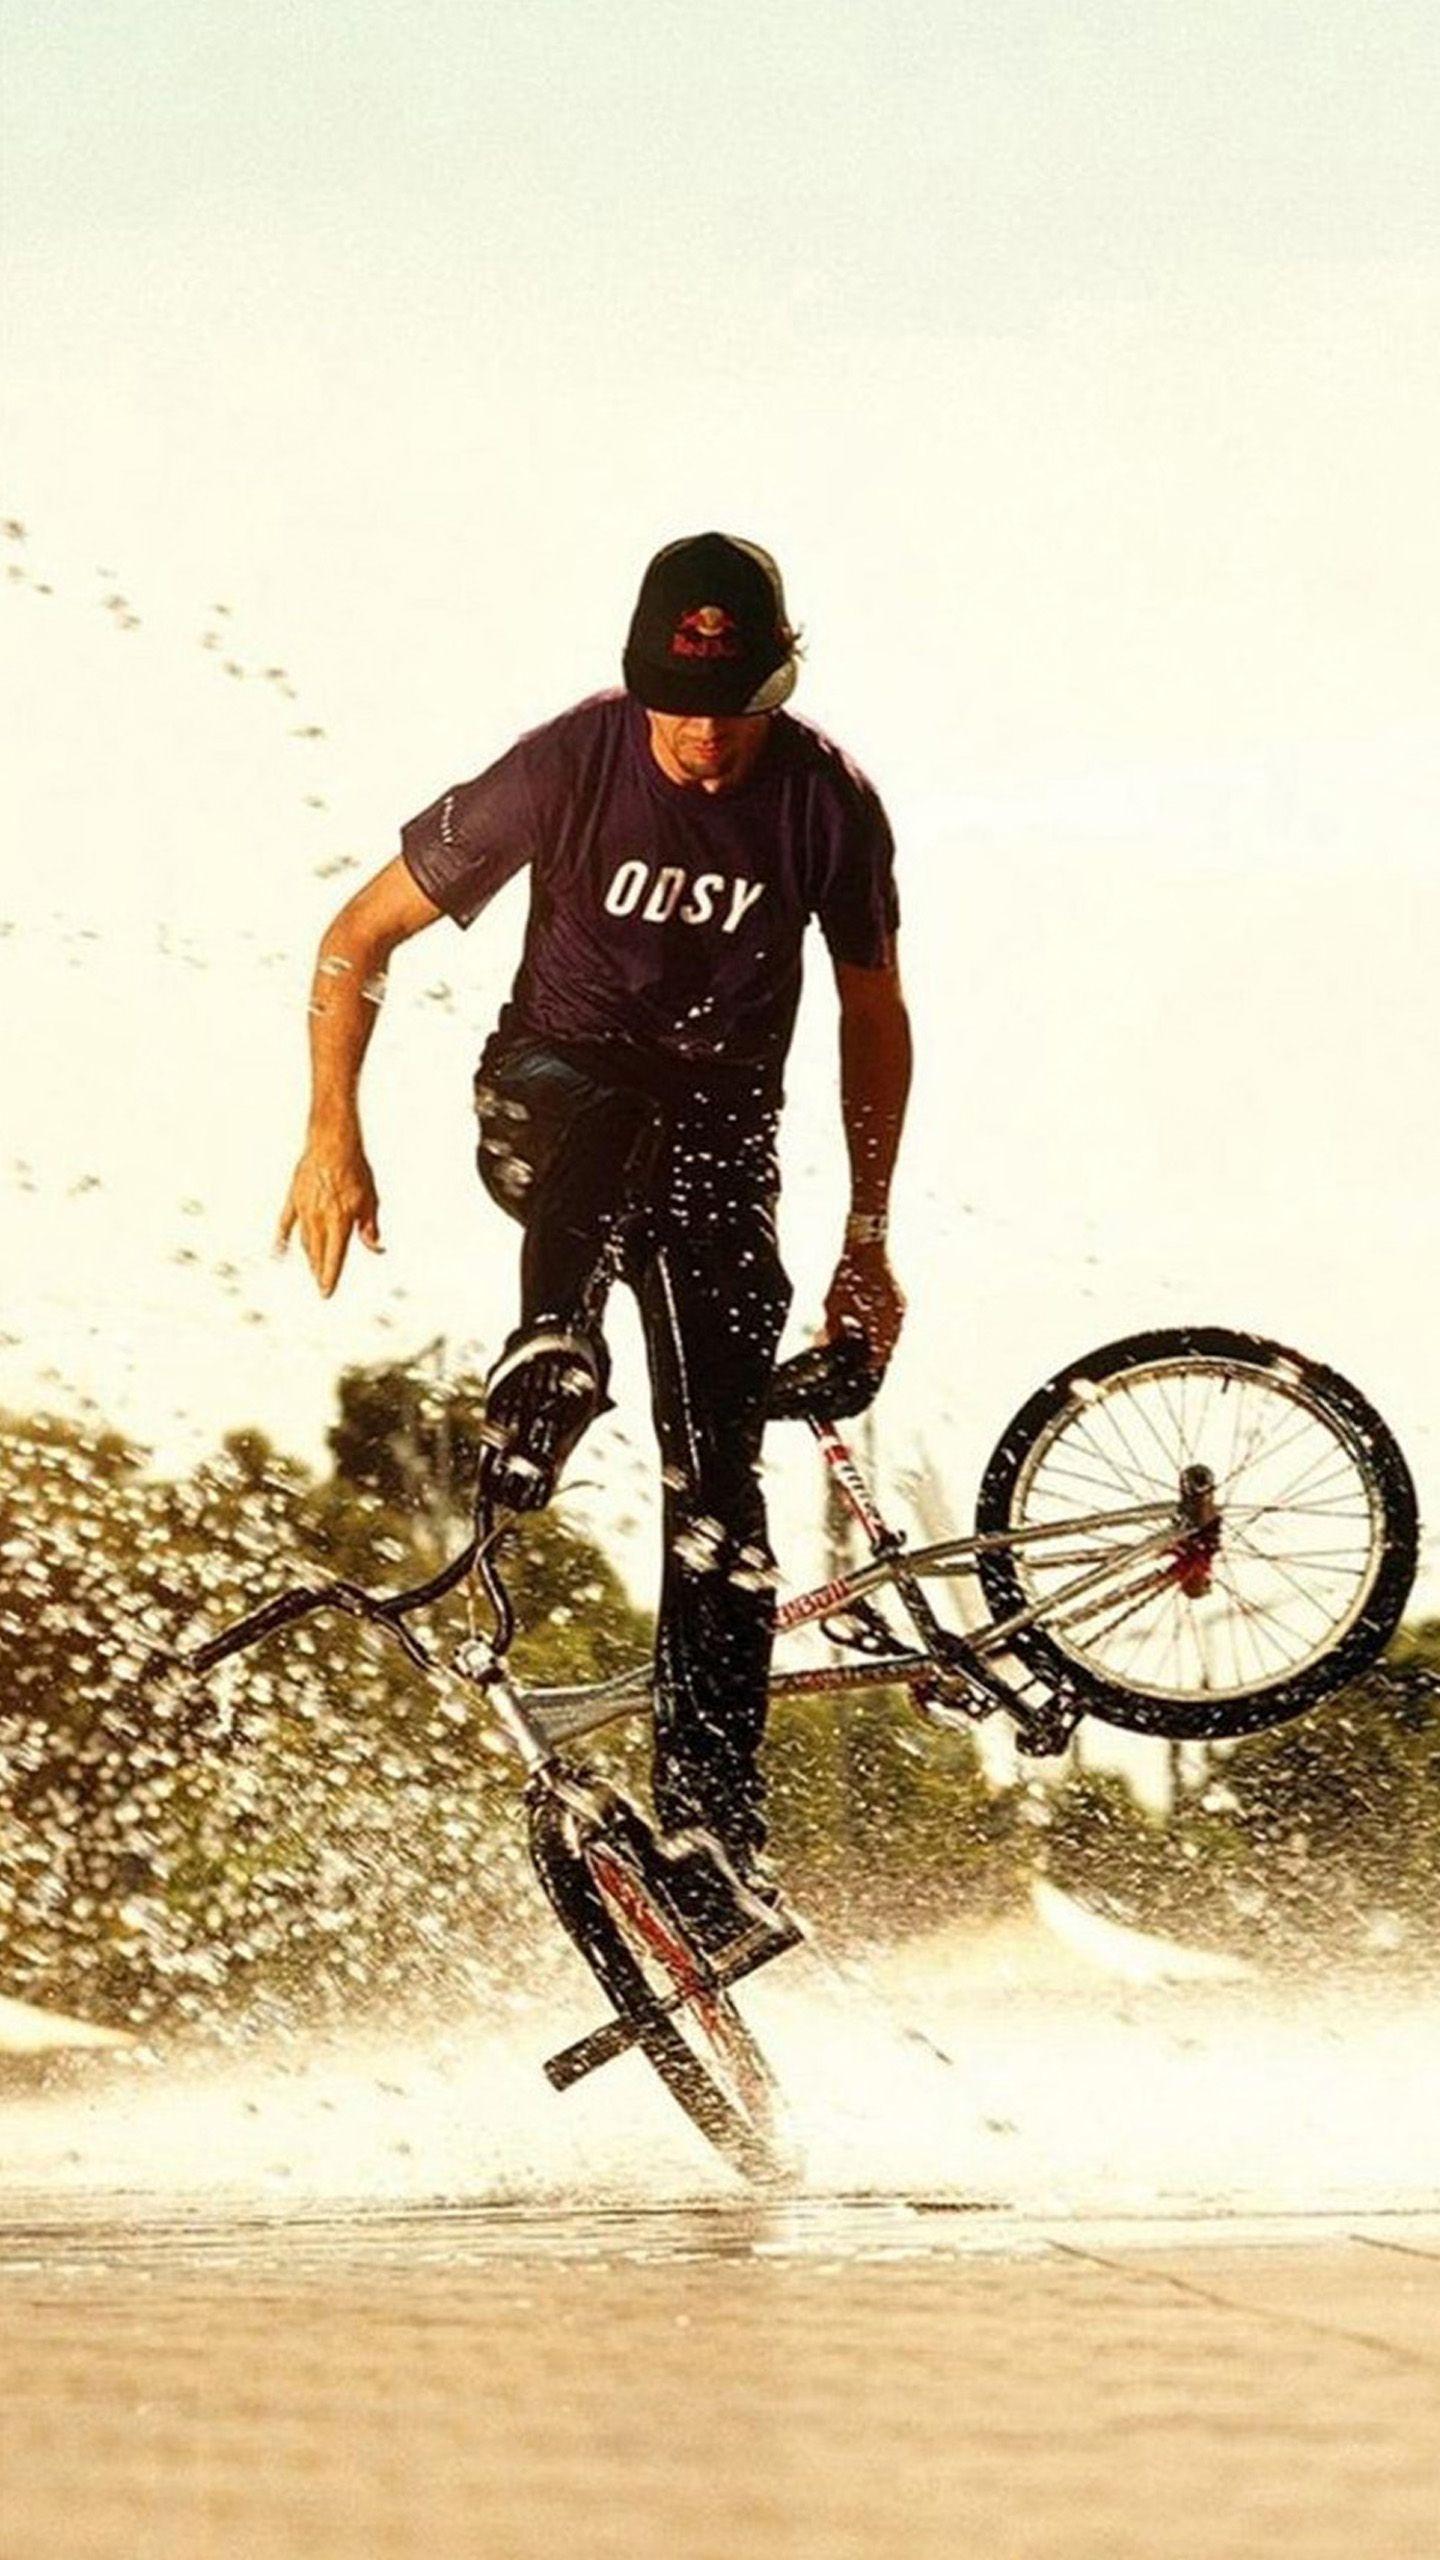 Stunt BMXer #biker #biking #BMX #xgames. Galaxy S6 Wallpaper